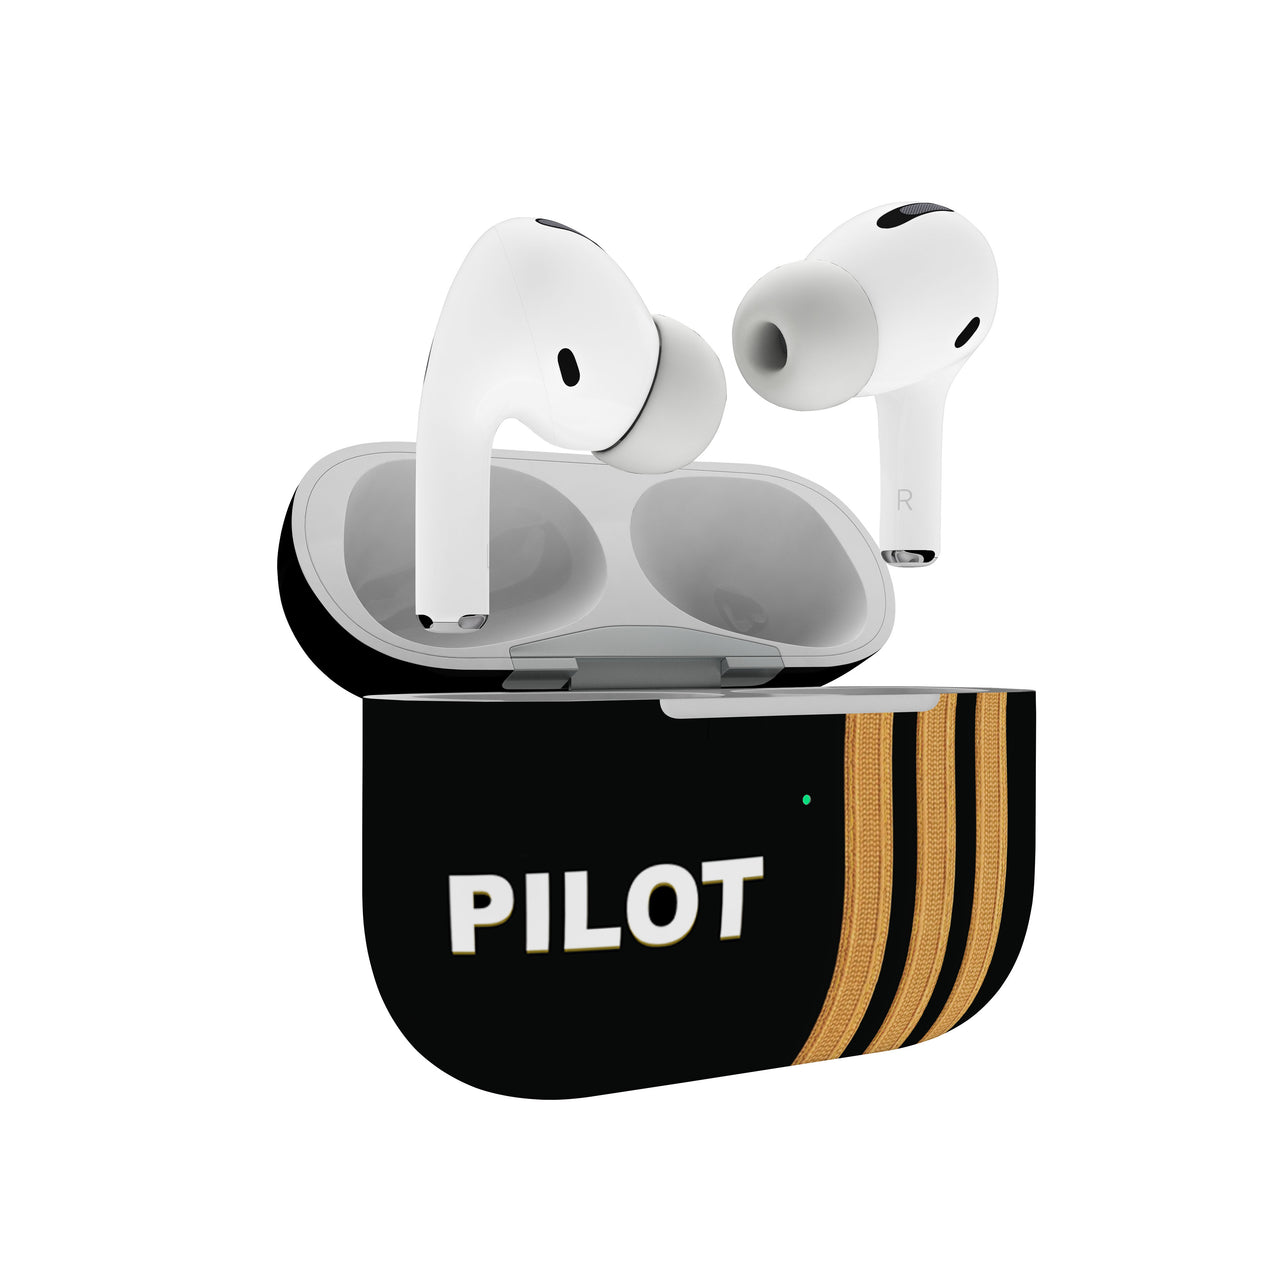 Pilot & Epaulettes (4,3,2 Lines) Designed AirPods  Cases